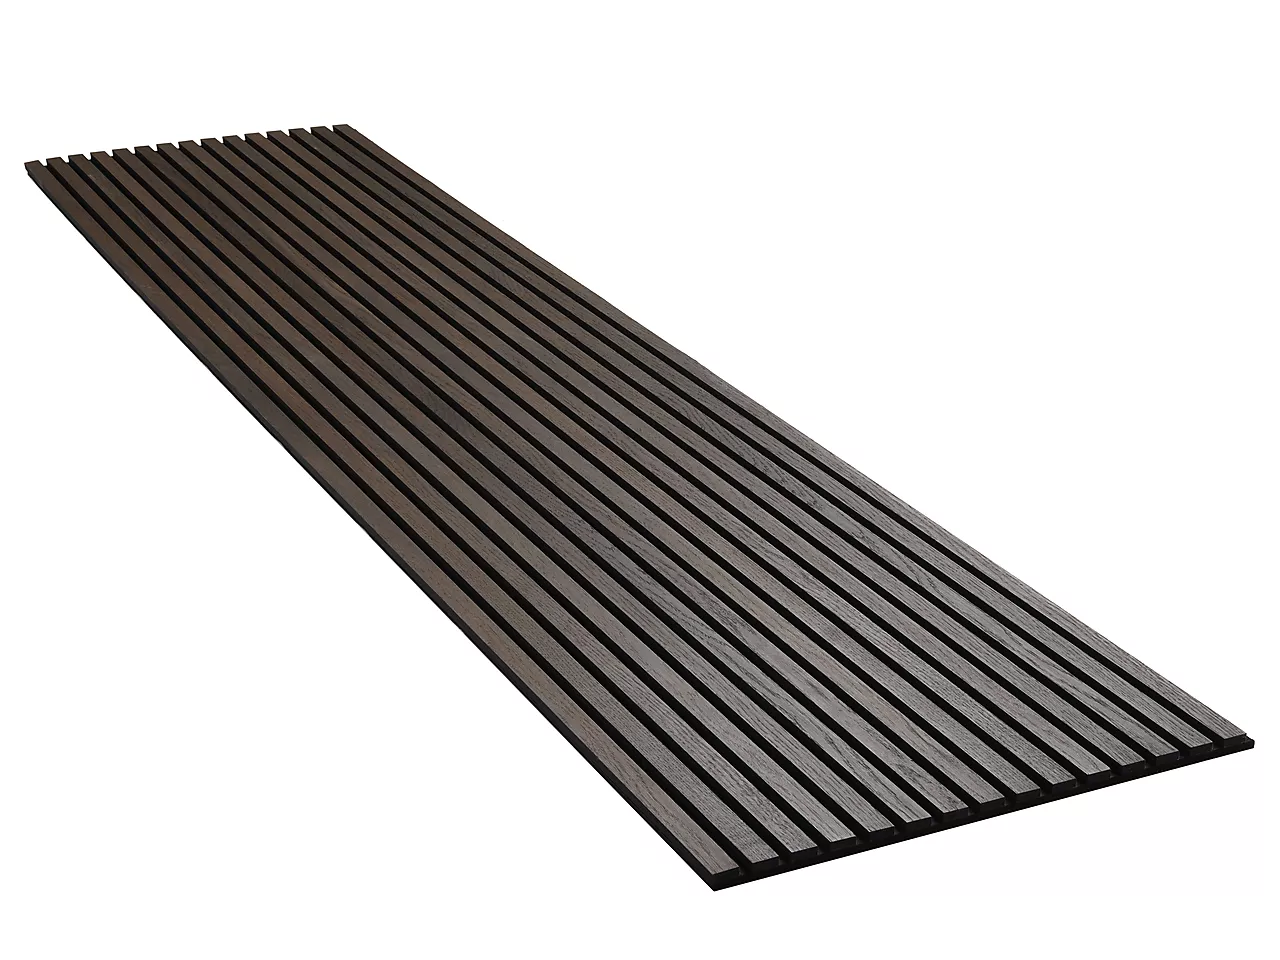 Panel røykt eik ubeh (fsc)-2400 svart kjerne, svart filt, 2400x600